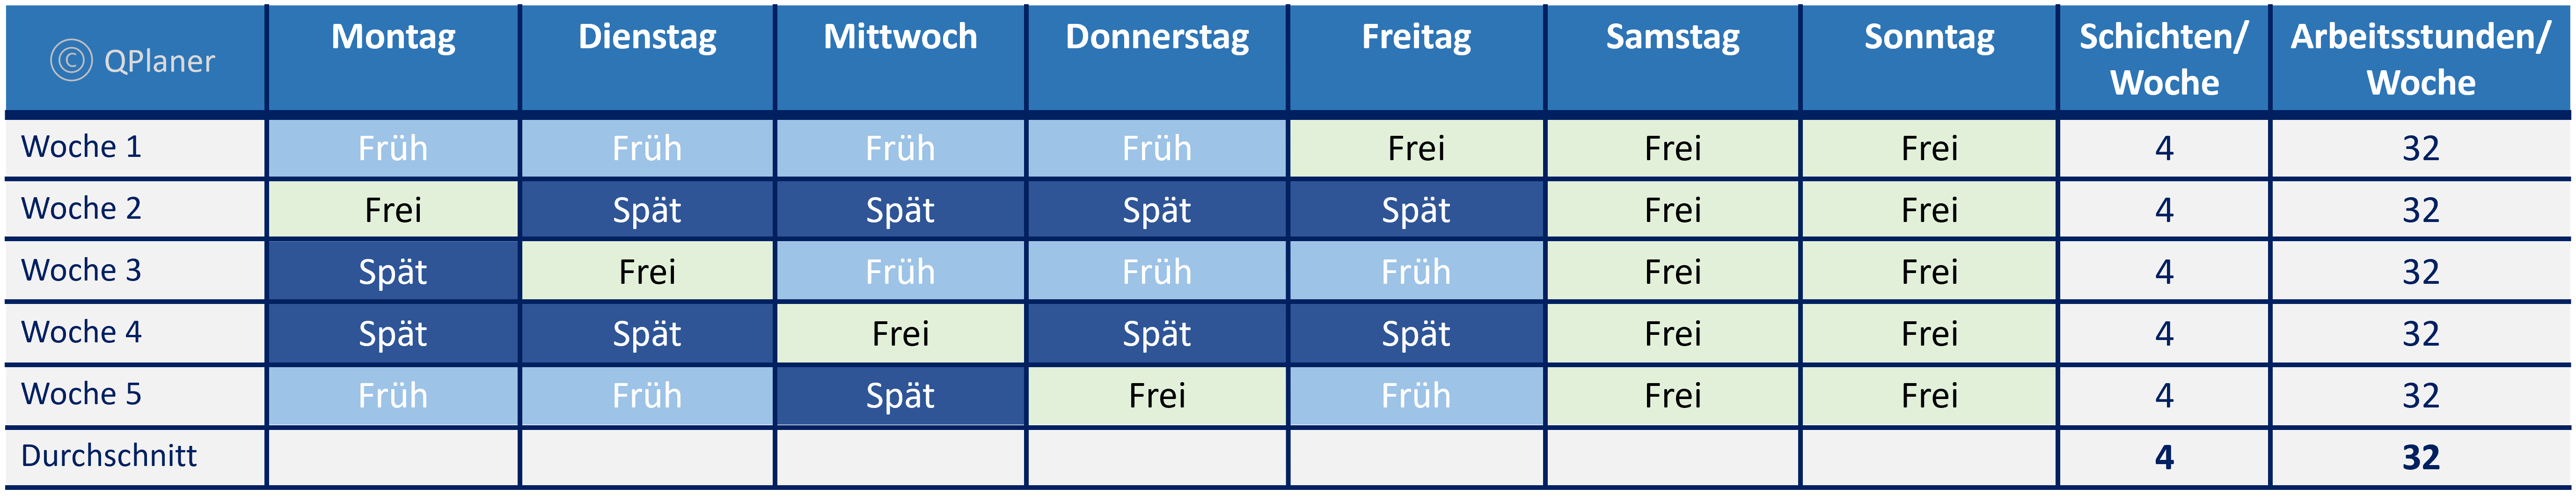 Frühschicht/Spätschicht - 2 Schichtbetrieb - Beispiele Vier Tage Woche Schichtmodell, Betriebszeit Mo - Fr